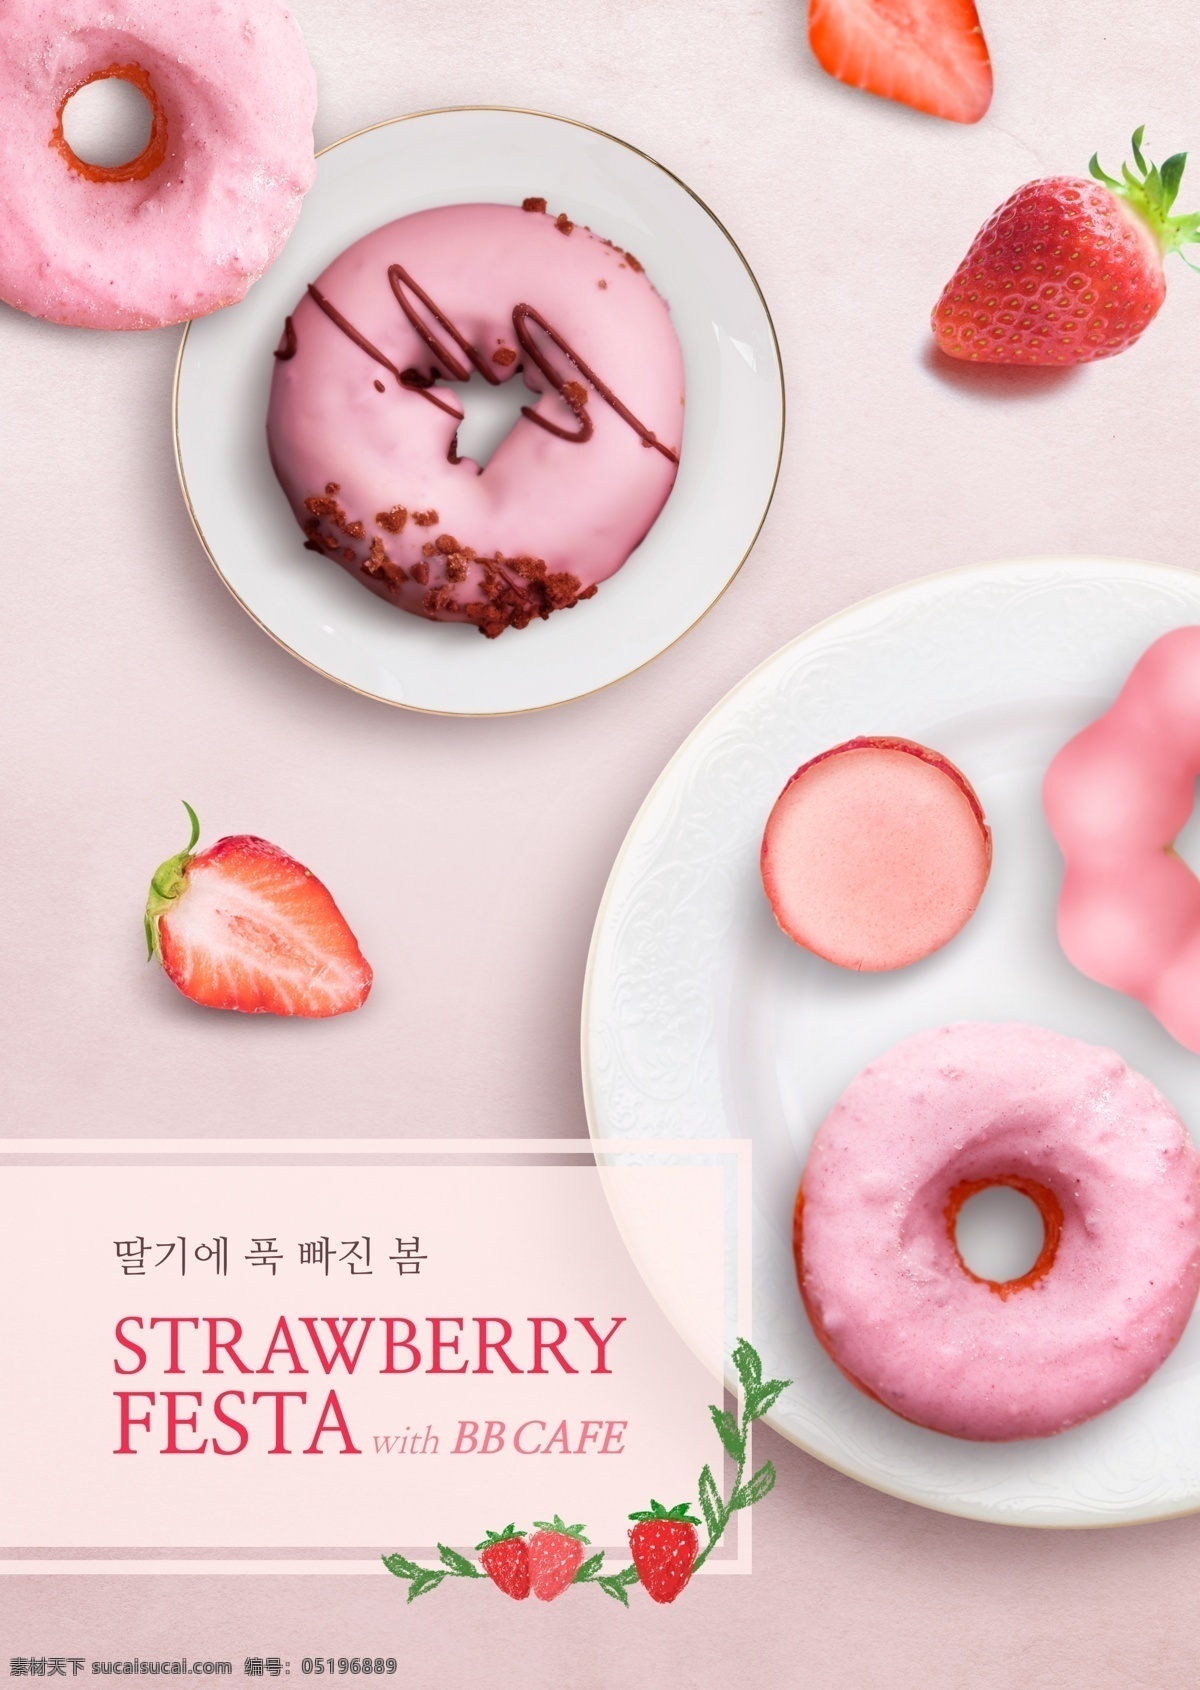 粉色 草莓 甜甜 圈 美食 海报素材 美食海报 食物 草莓甜点 甜甜圈 饼干 psd海报 点心 甜点 美味 美味下午茶 美食海报设计 外国海报